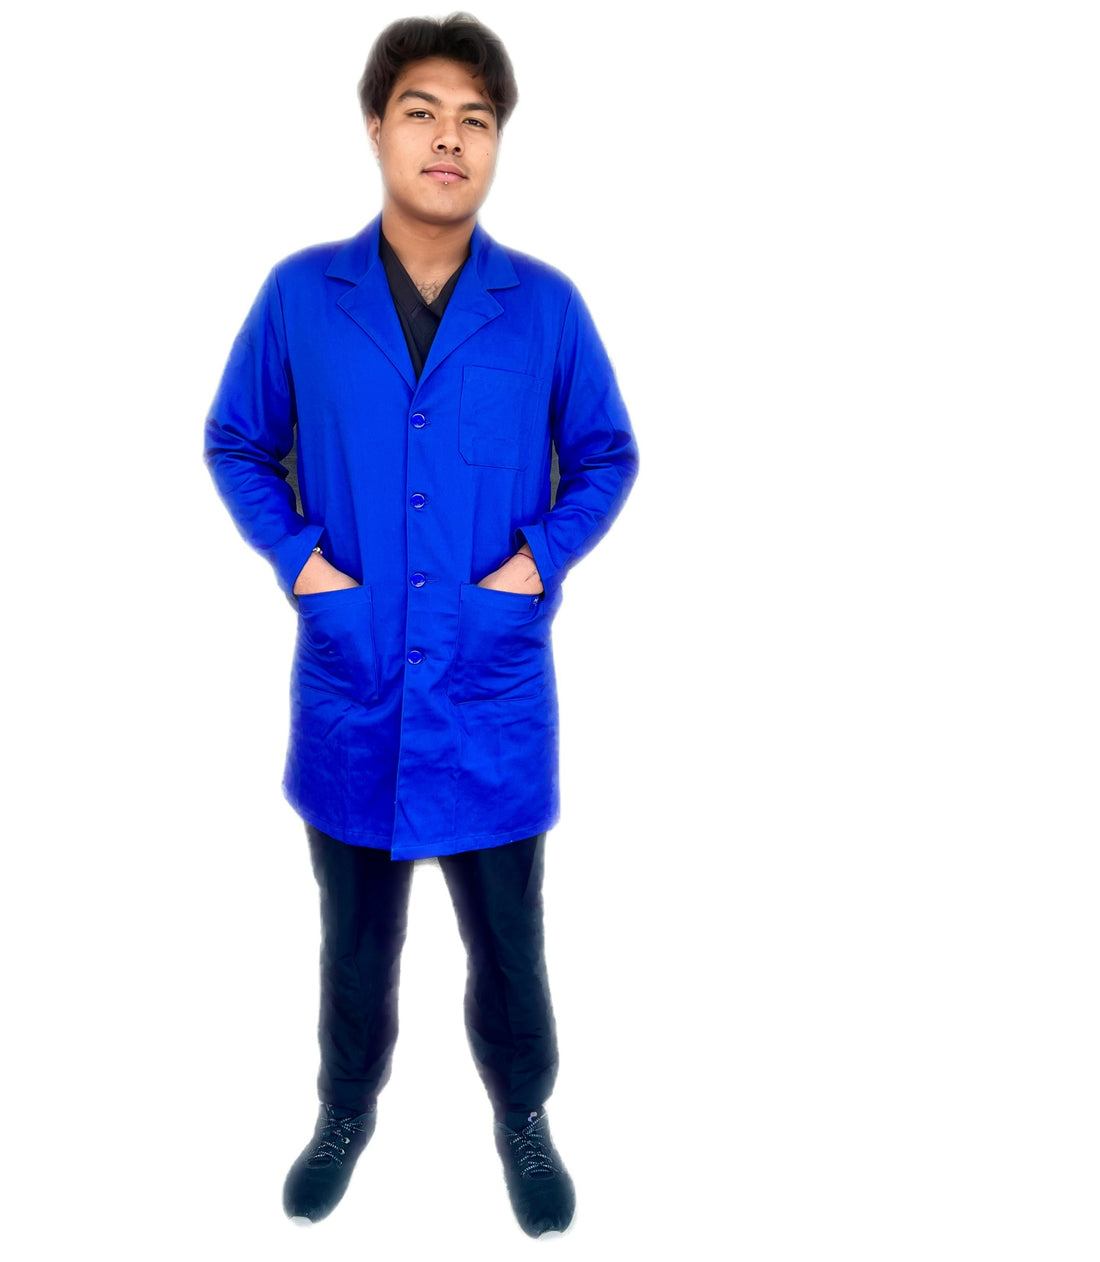 Bata Repelente azul rey Antifluido para hombre clínica uniformes Stanfordbre-clinica-uniformes-stanford